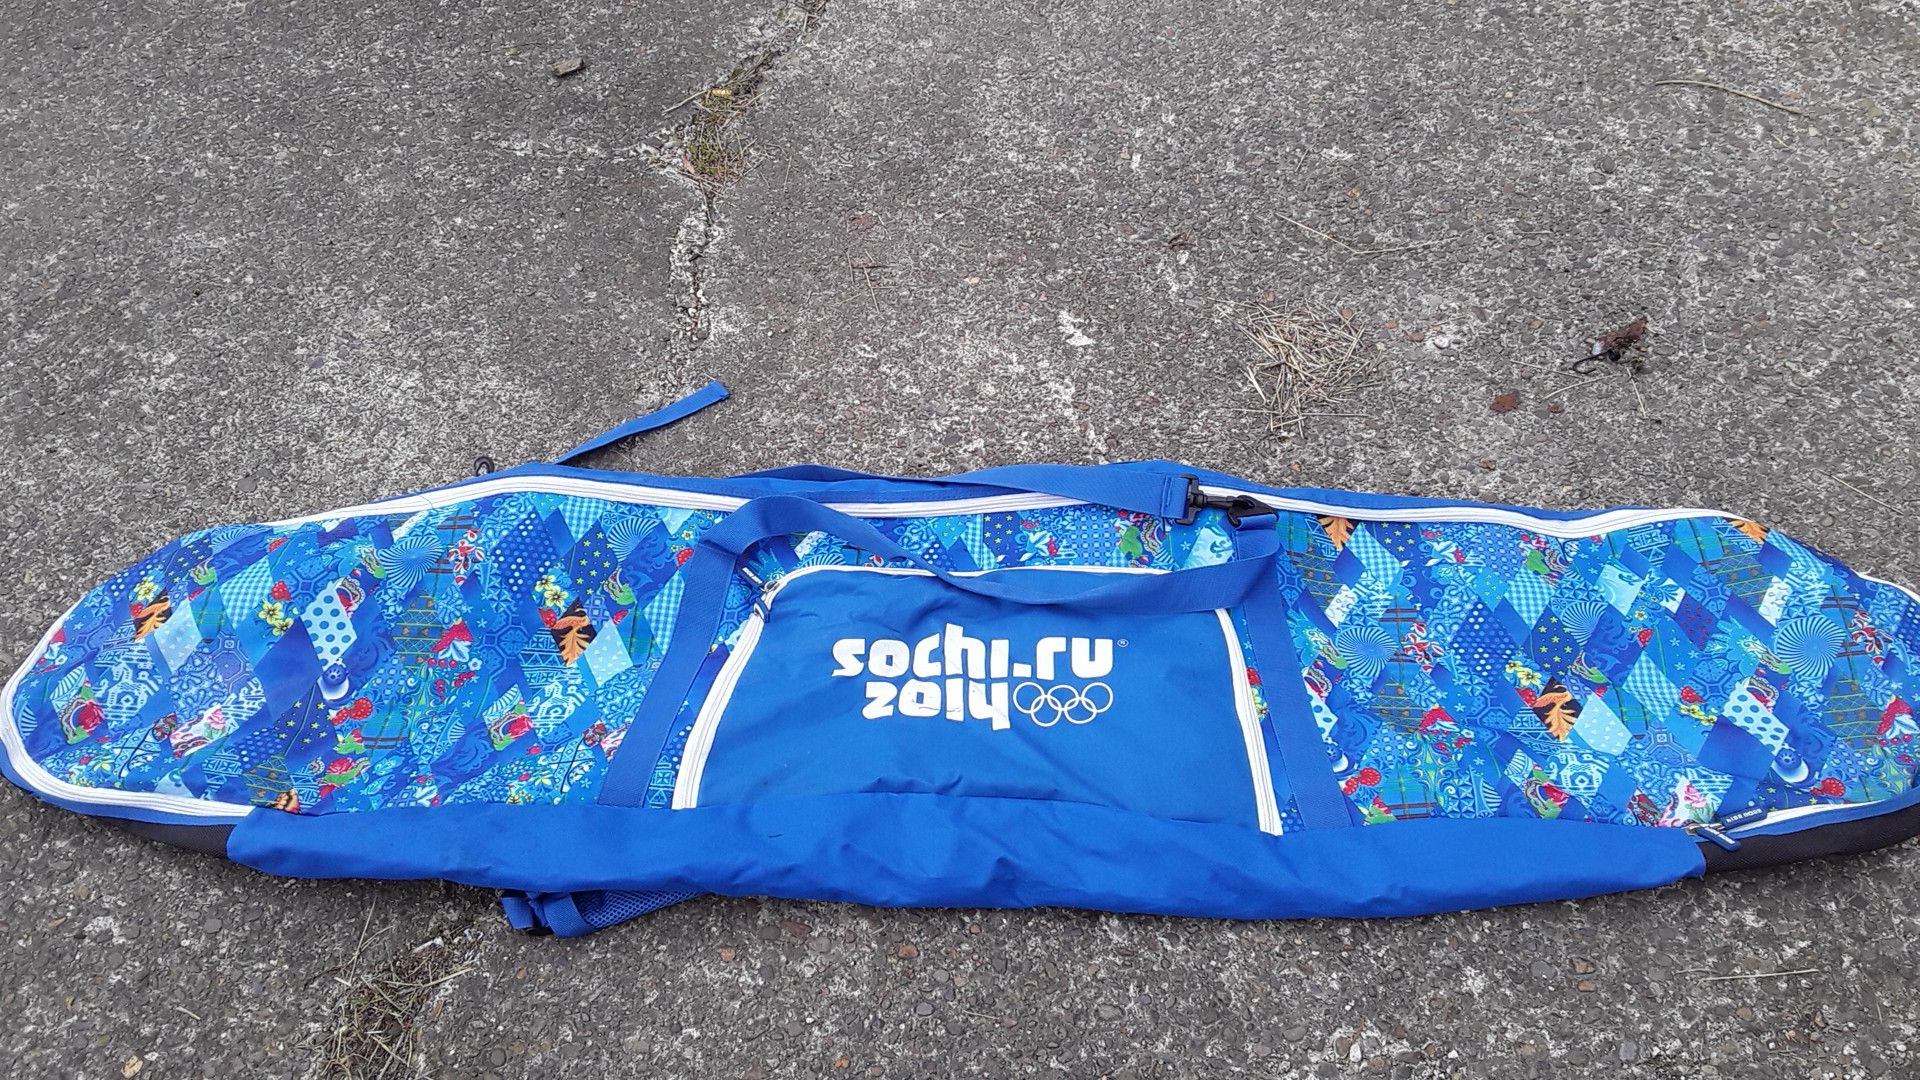 Snowboard bag Sochi 2014